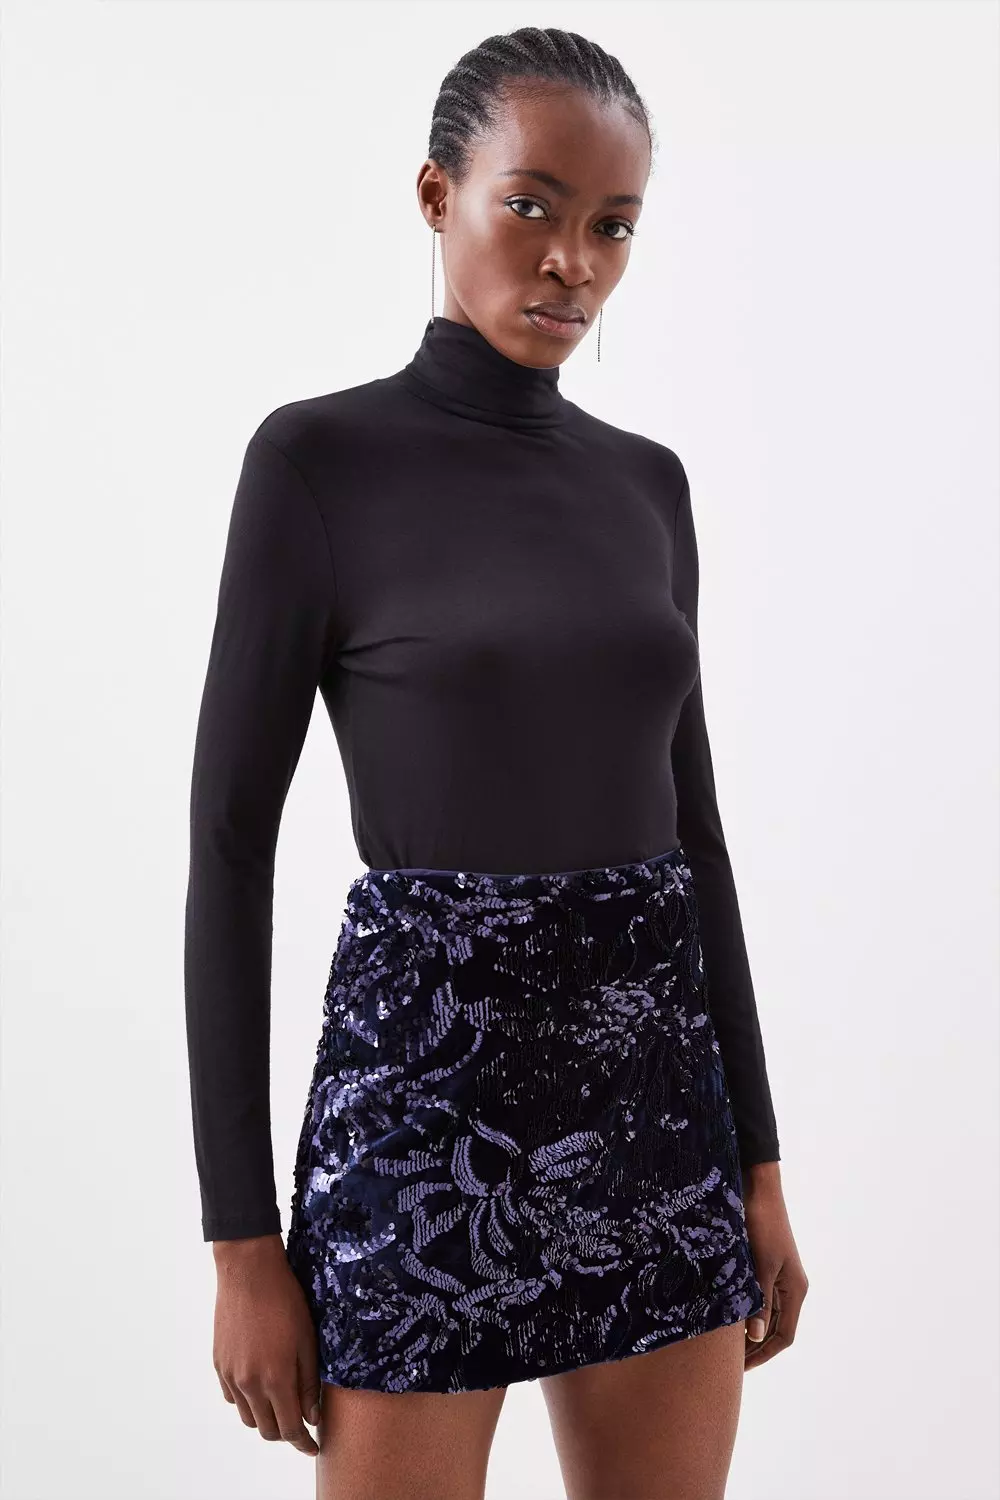 Sequin High Waisted Woven Shorts | Karen Millen